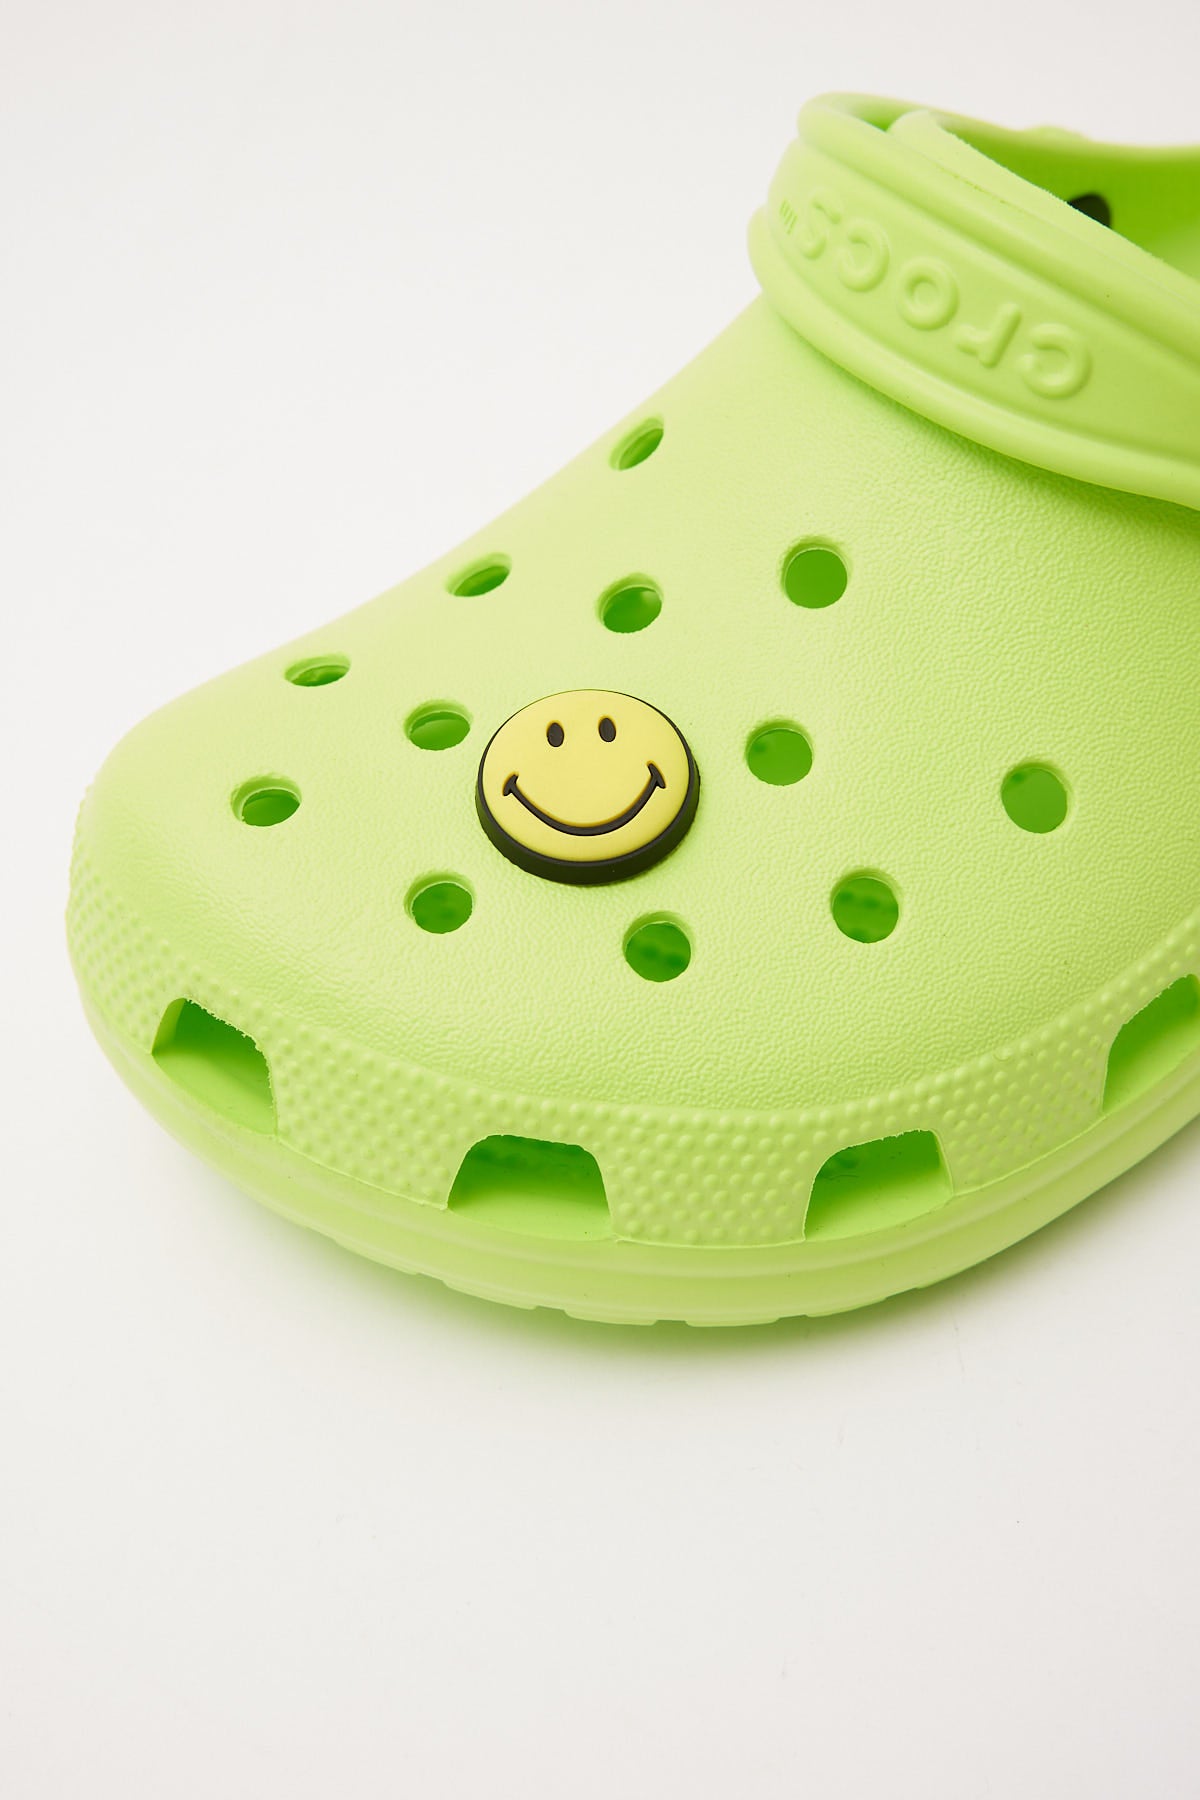 Crocs Smiley Brand Smiley Face Jibbitz